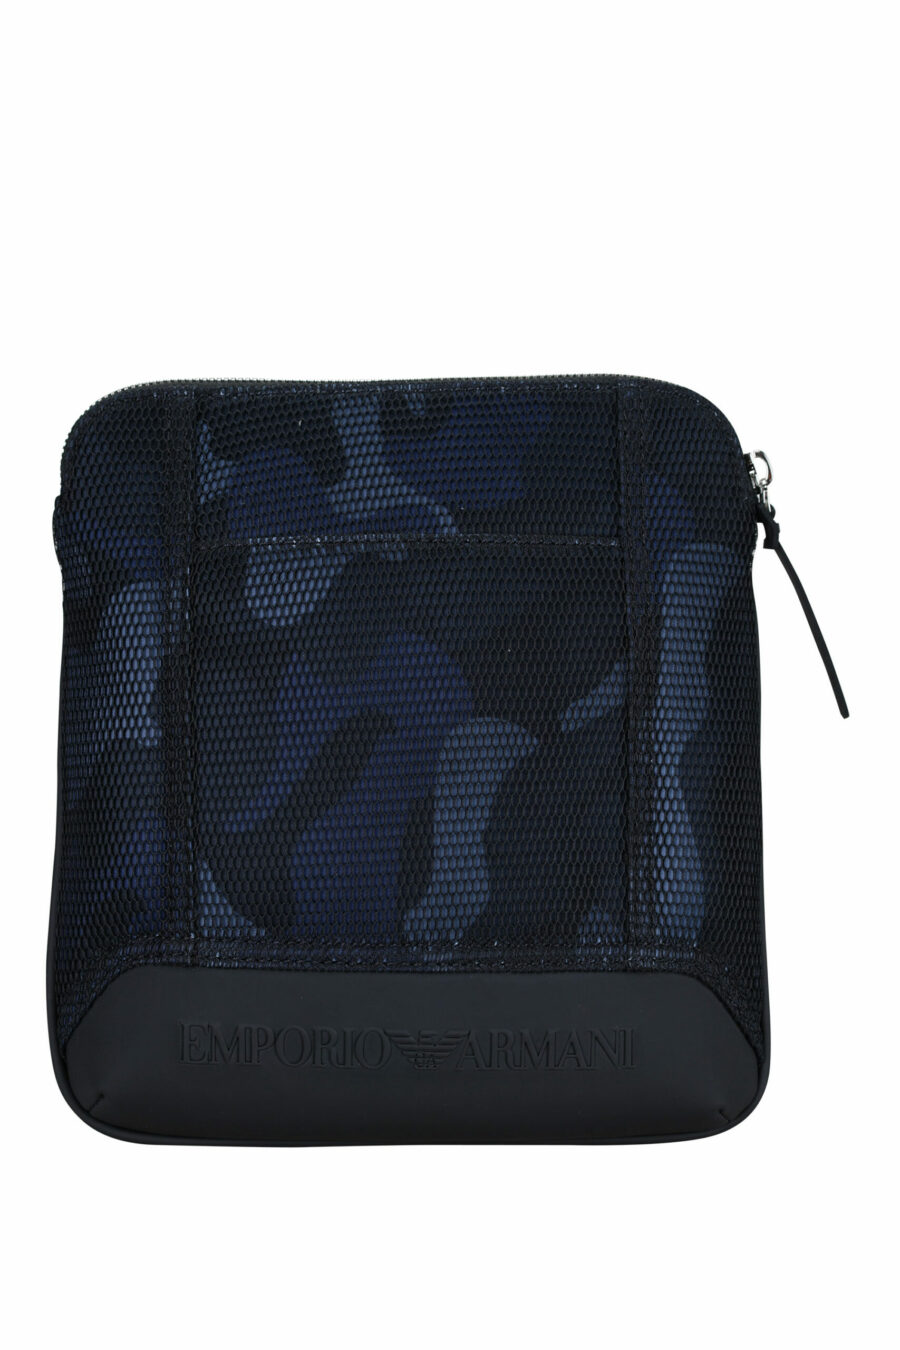 Blaue Camouflage-Kreuztasche mit Logo - 8057767487683 skaliert